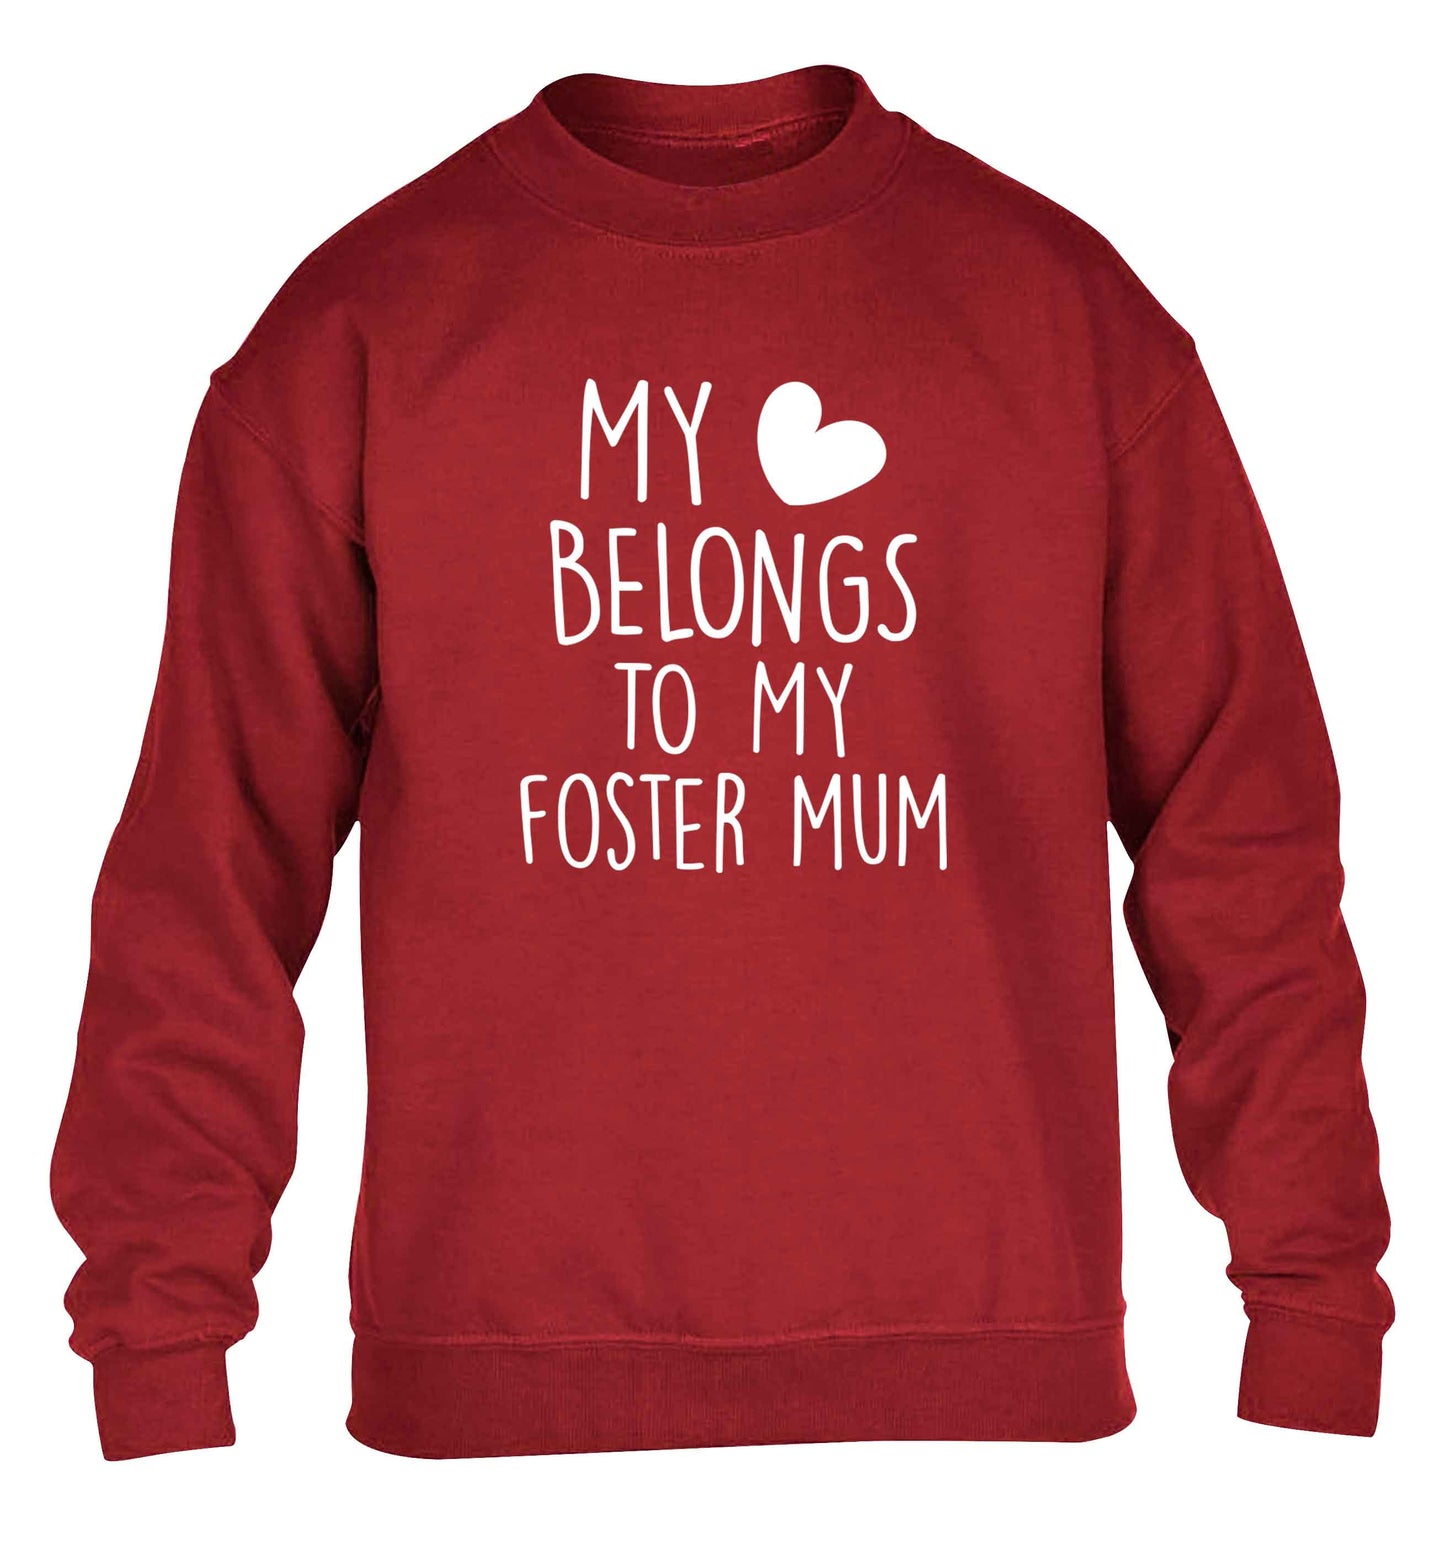 My heart belongs to my foster mum children's grey sweater 12-13 Years